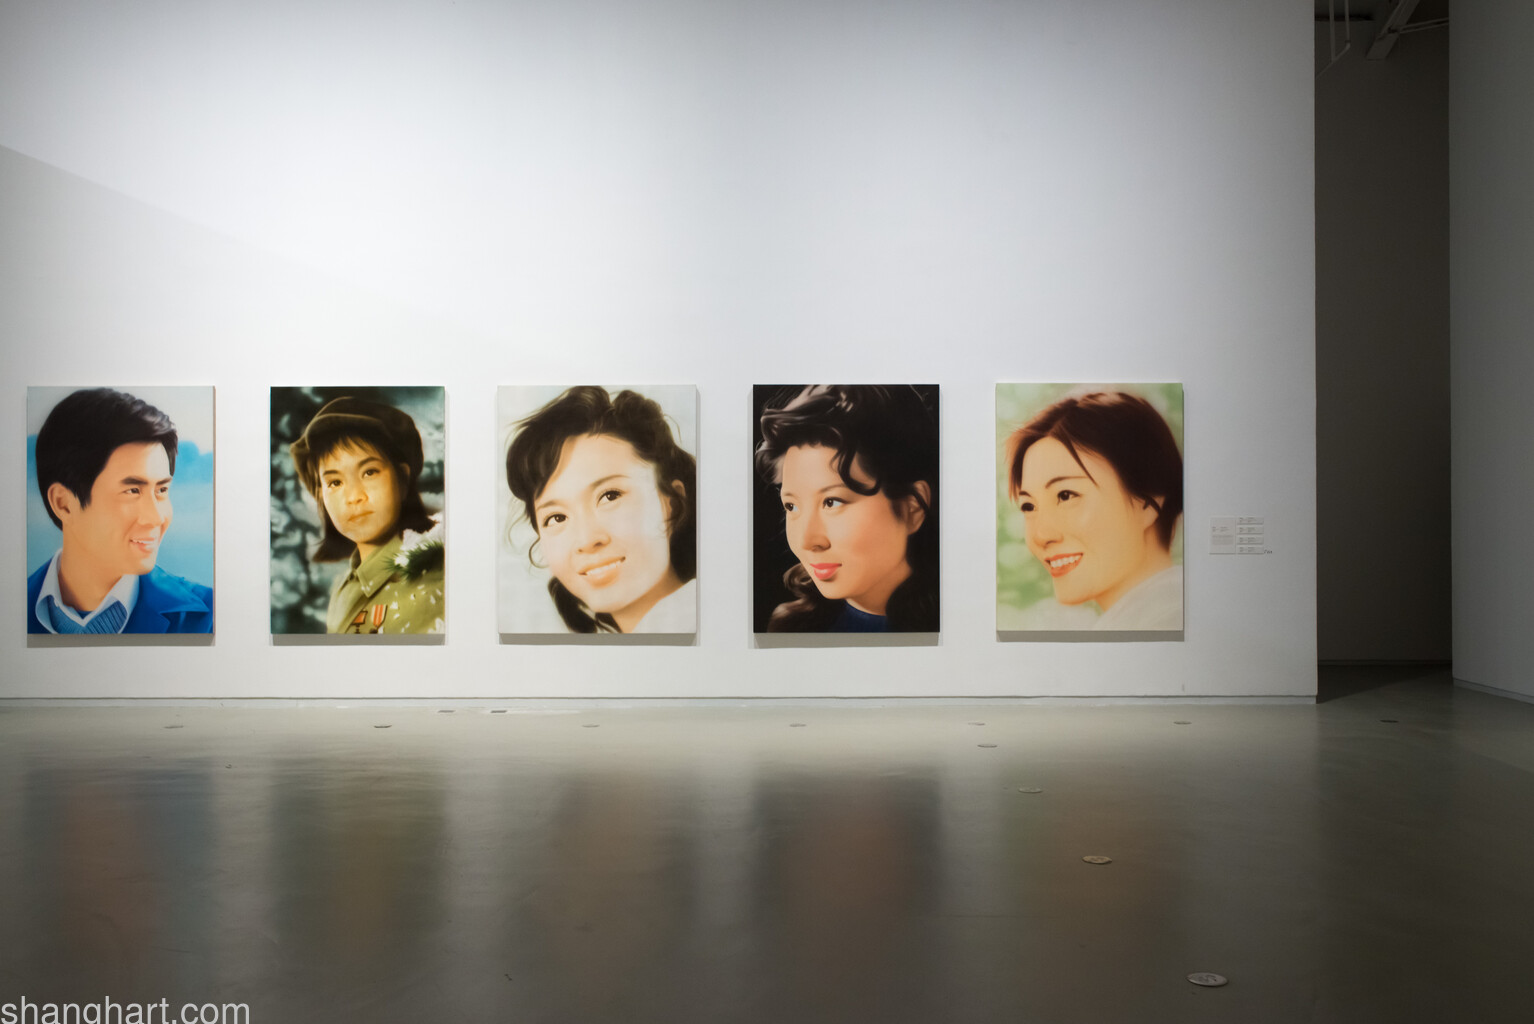 周铁海 80年代明星系列 从左至右依次为郭凯敏、刘晓庆、方舒、吴海燕、陈烨